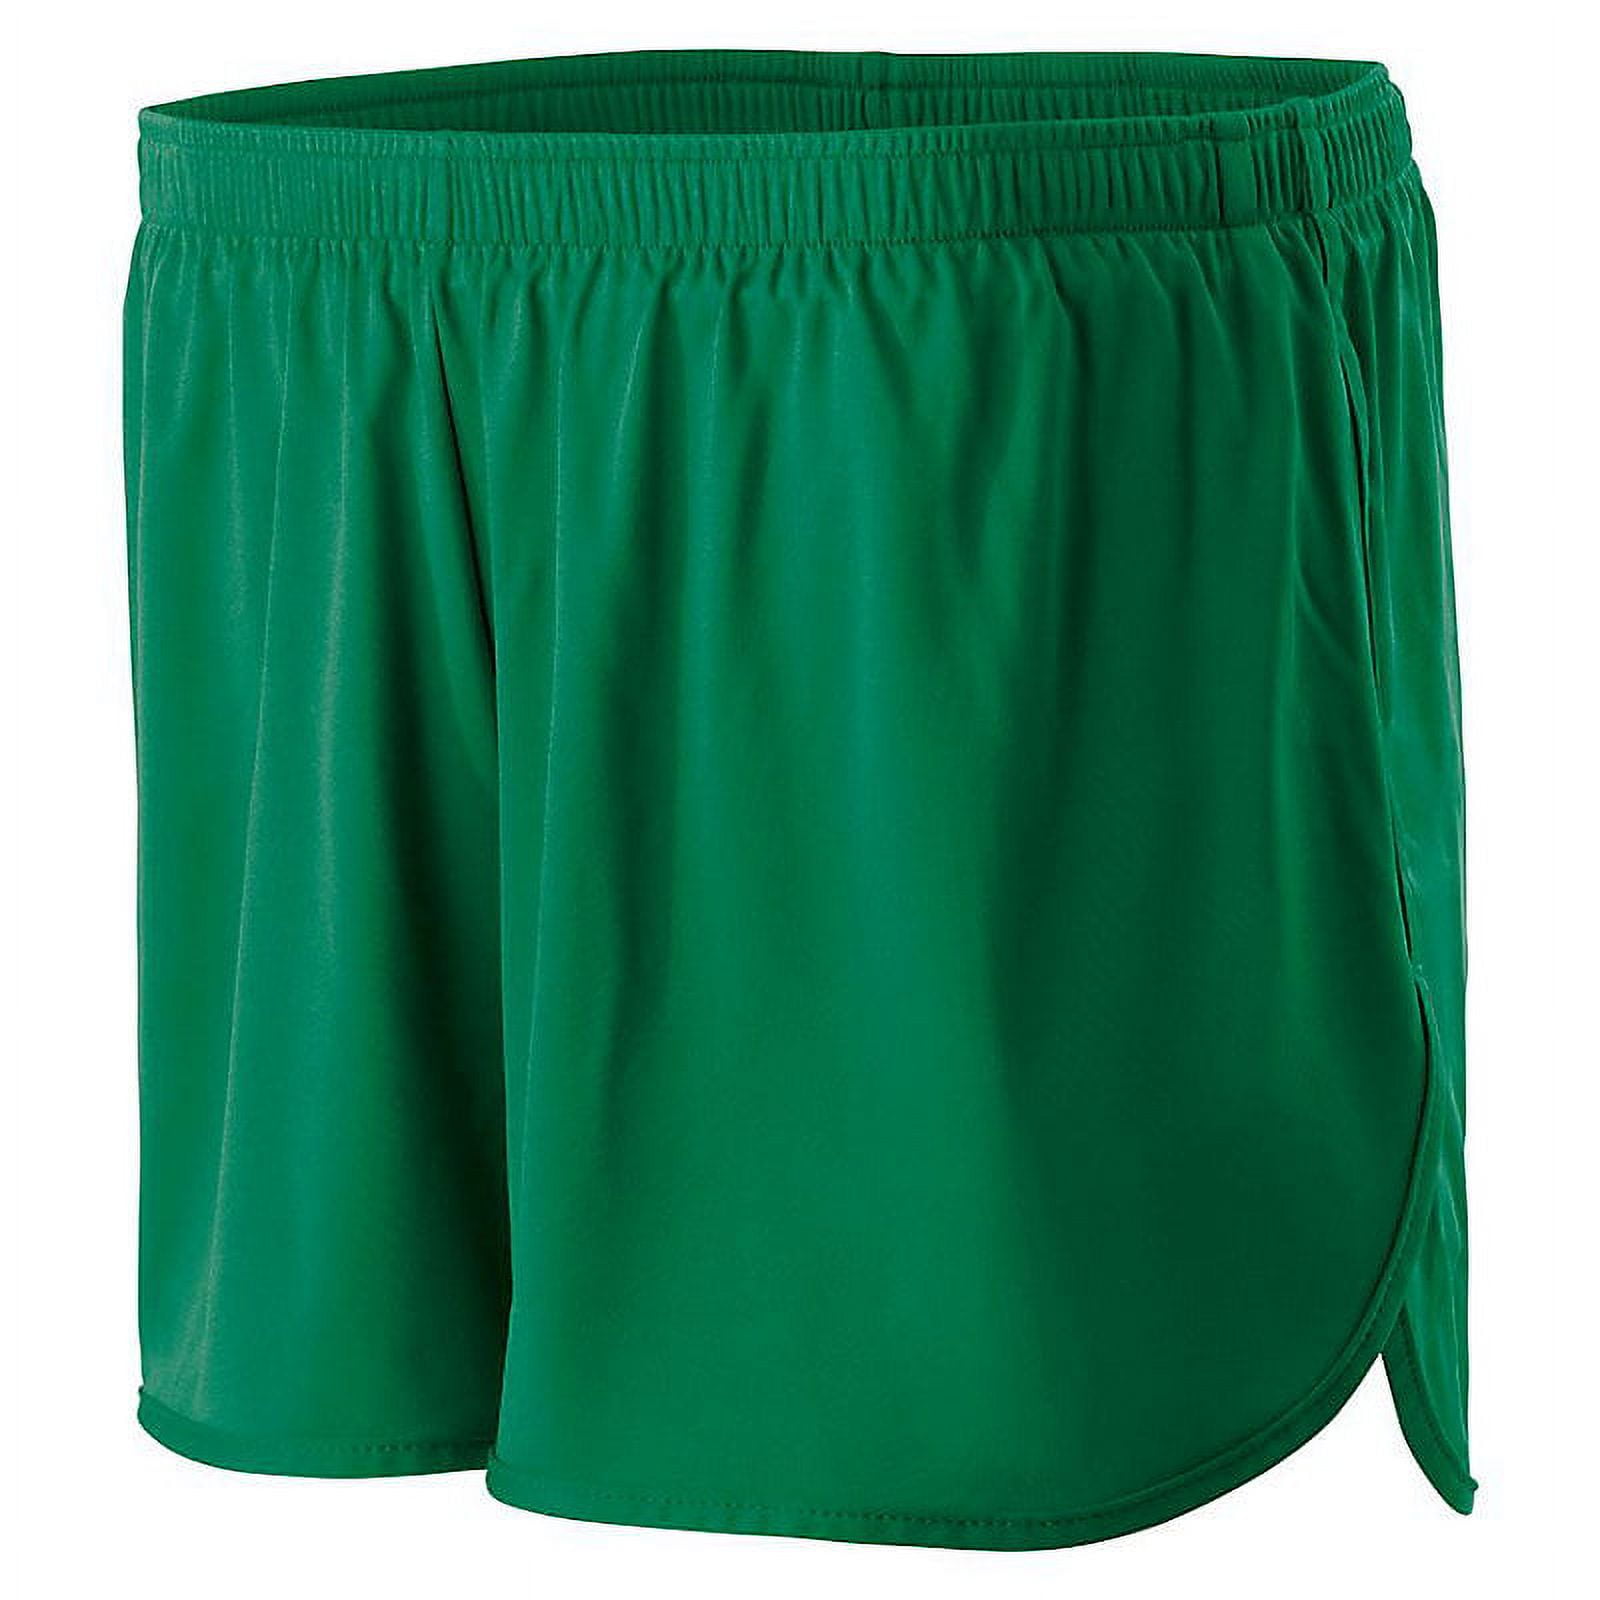 Men's Coaches Shorts